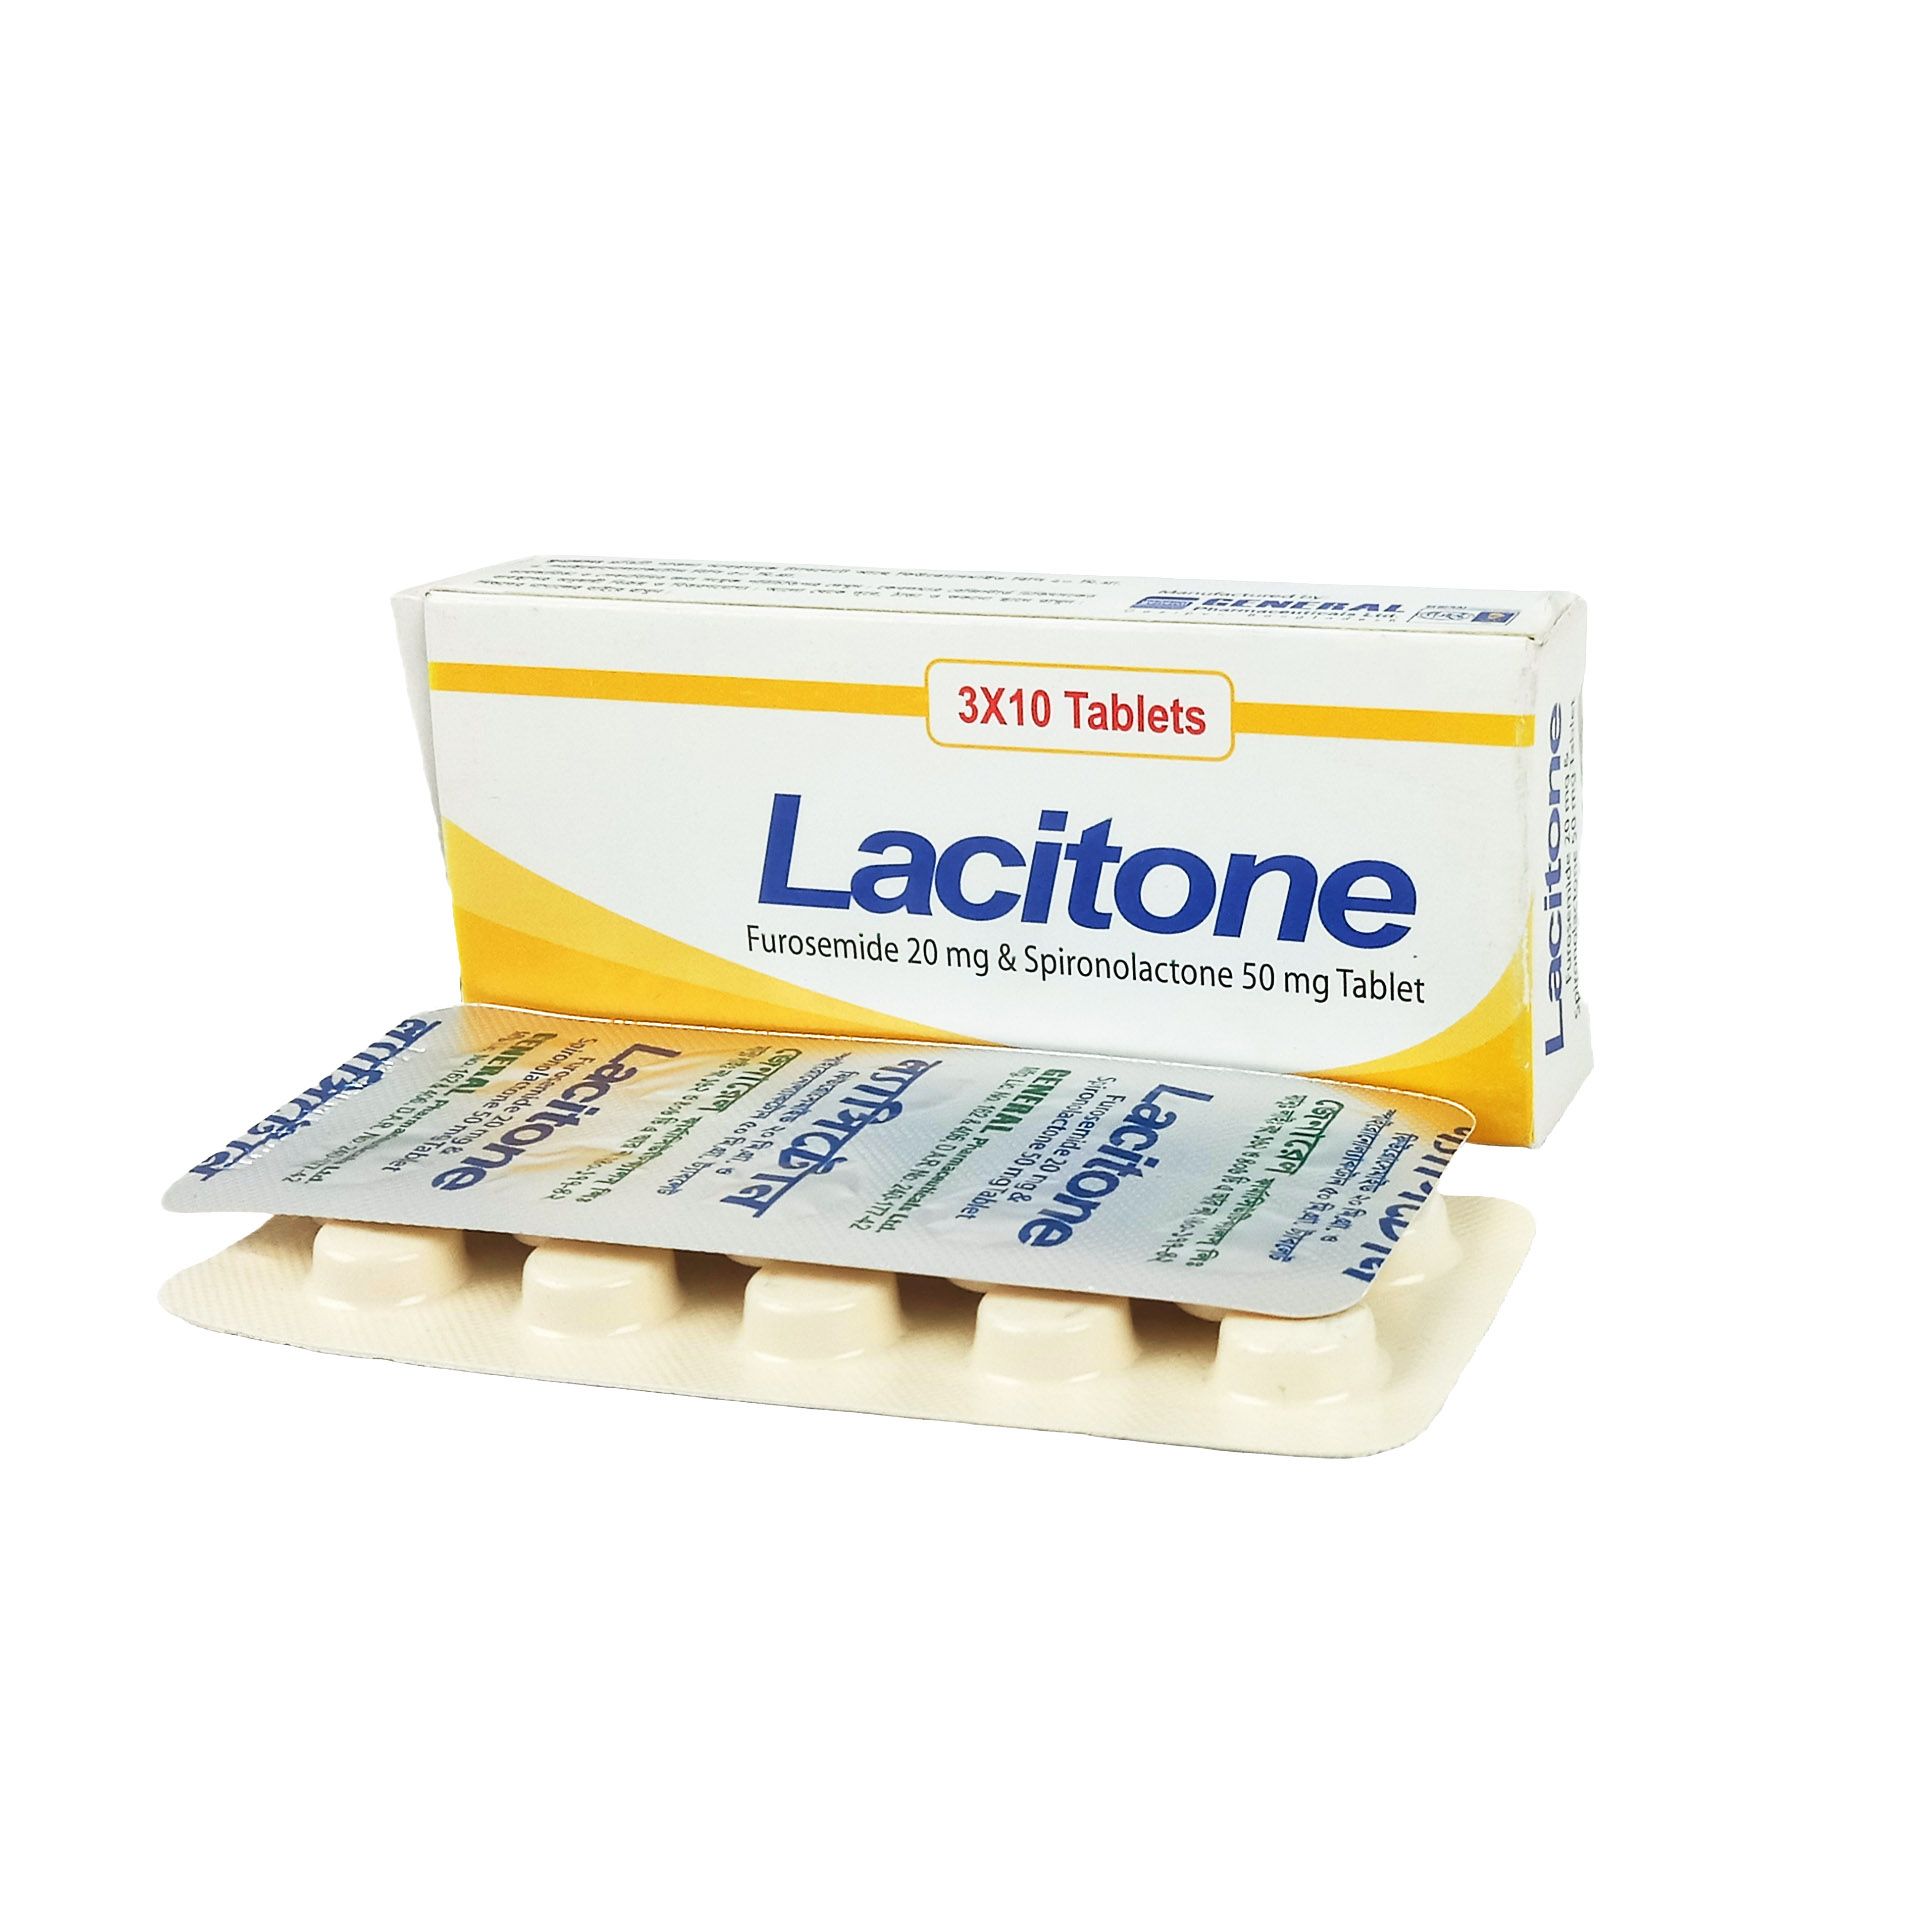 Lacitone 20/50 20mg+50mg Tablet